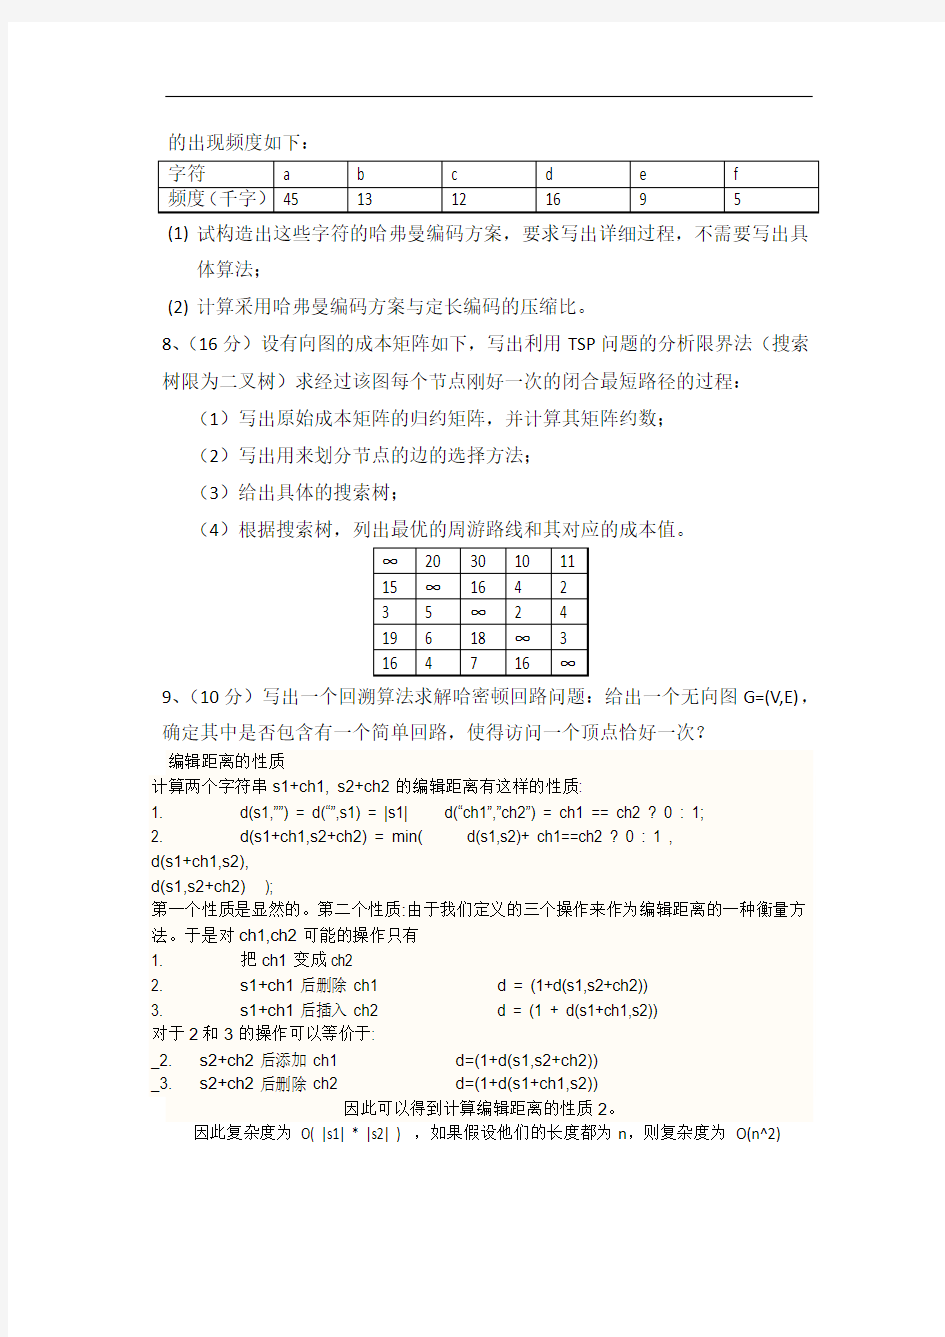 武汉大学计算机学院《算法设计与分析》考试试卷